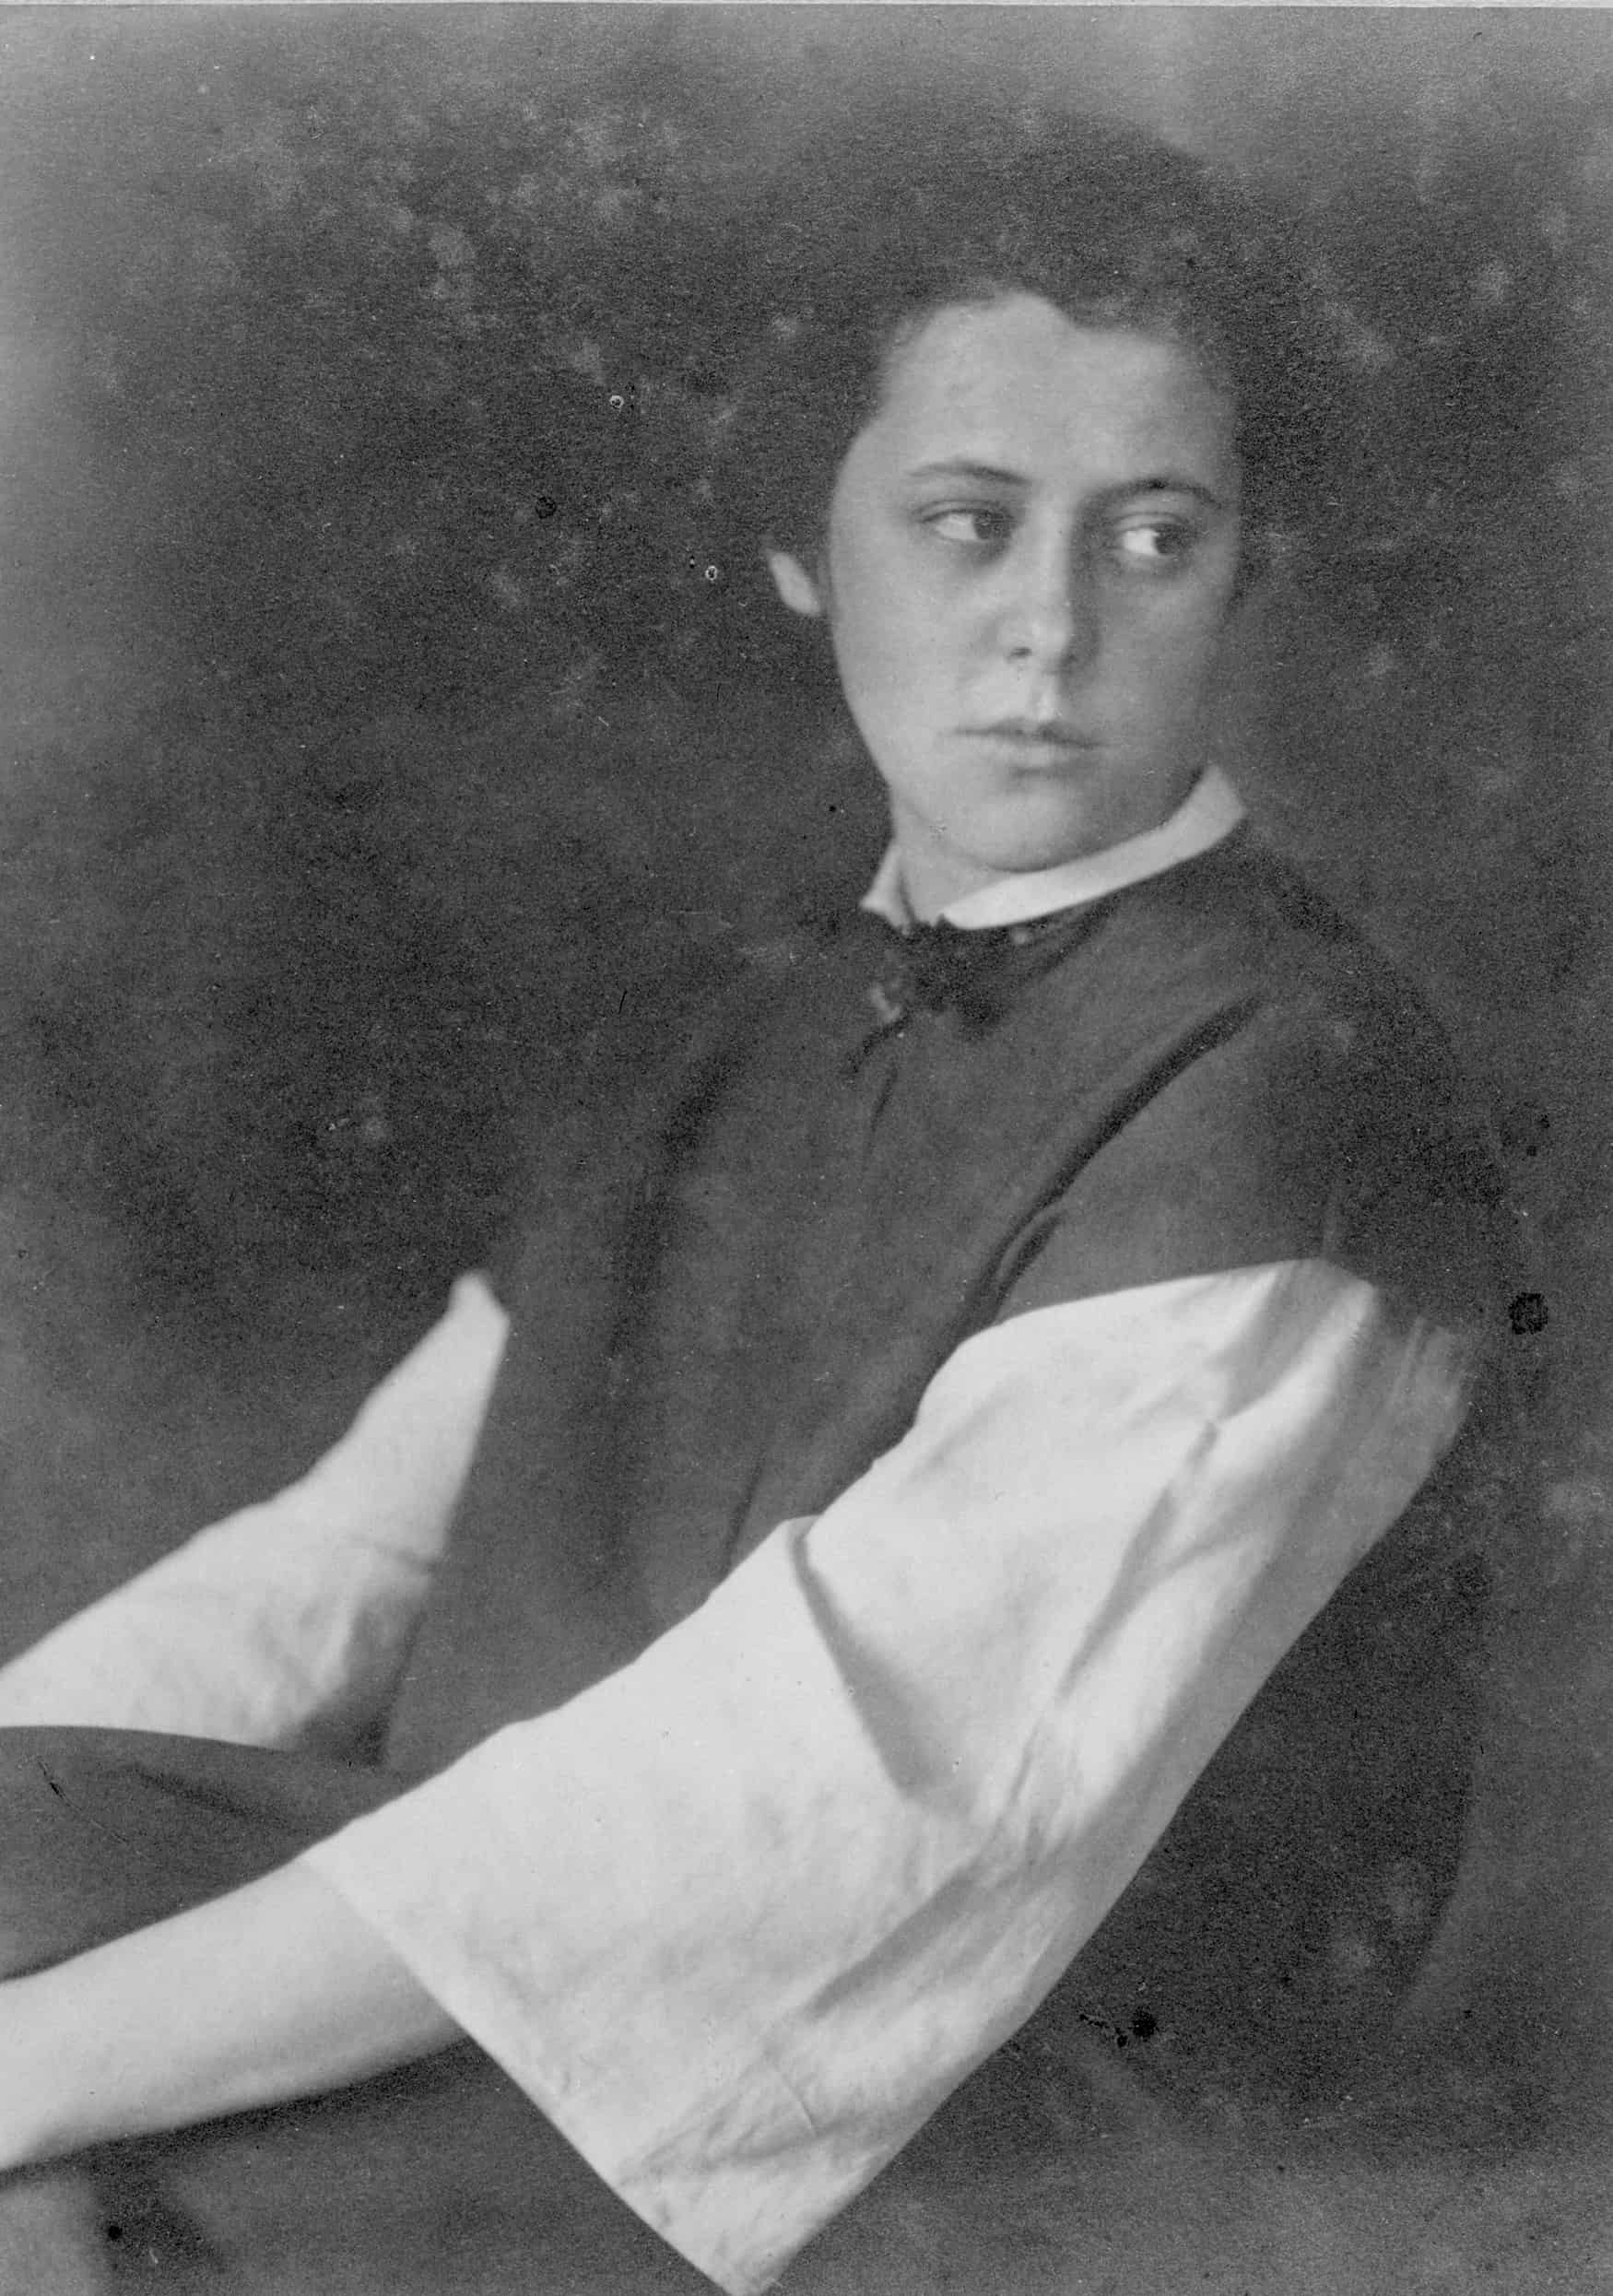 Porträt-Archivbild der jungen Frau Alma Siedhoff-Buscher